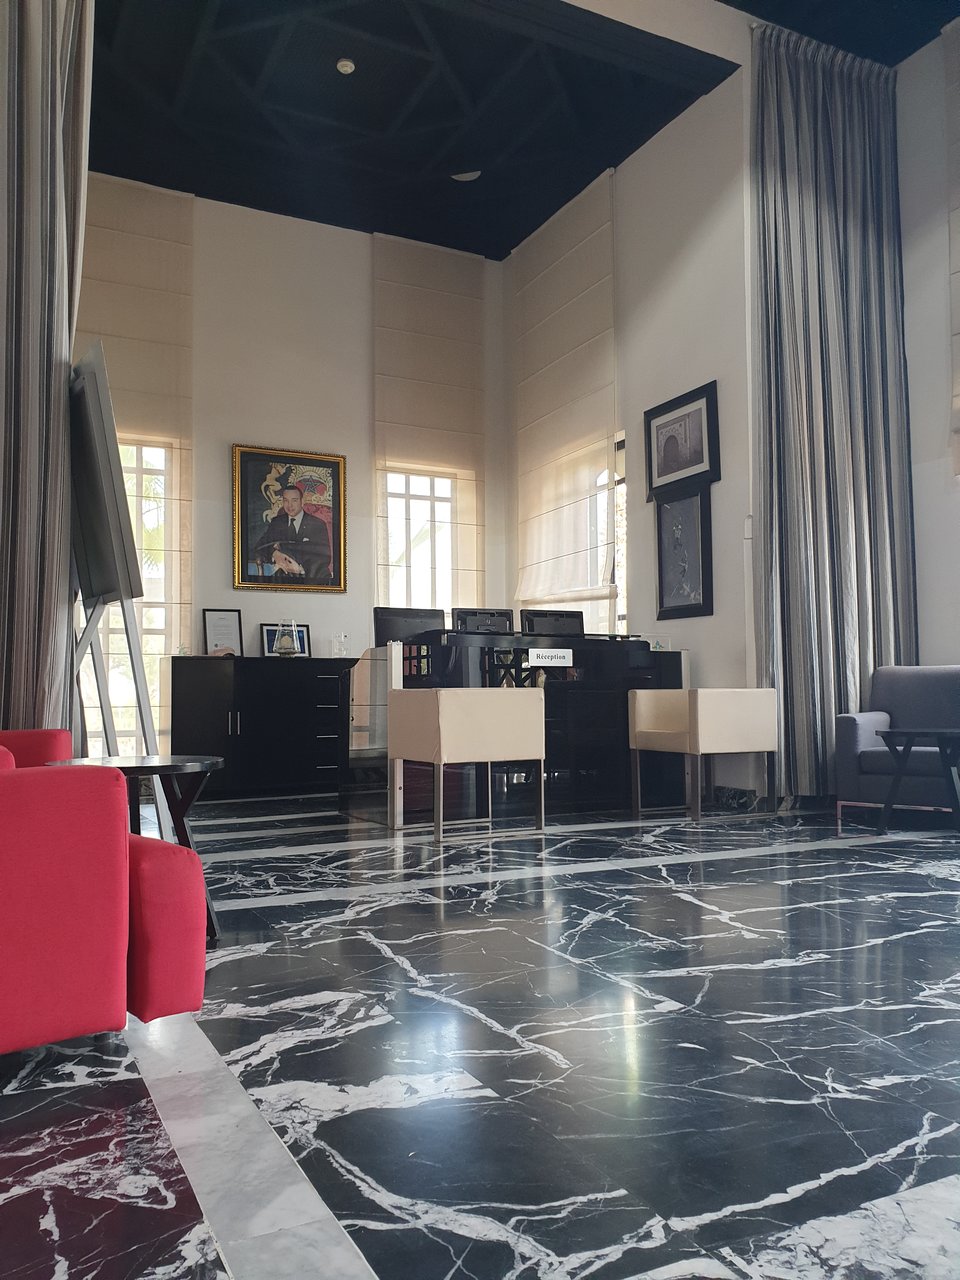 Moroccan Tile Fireplace Luxury Le Vizir Center Park & Resort $76 $Ì¶1Ì¶1Ì¶1Ì¶ Updated 2019